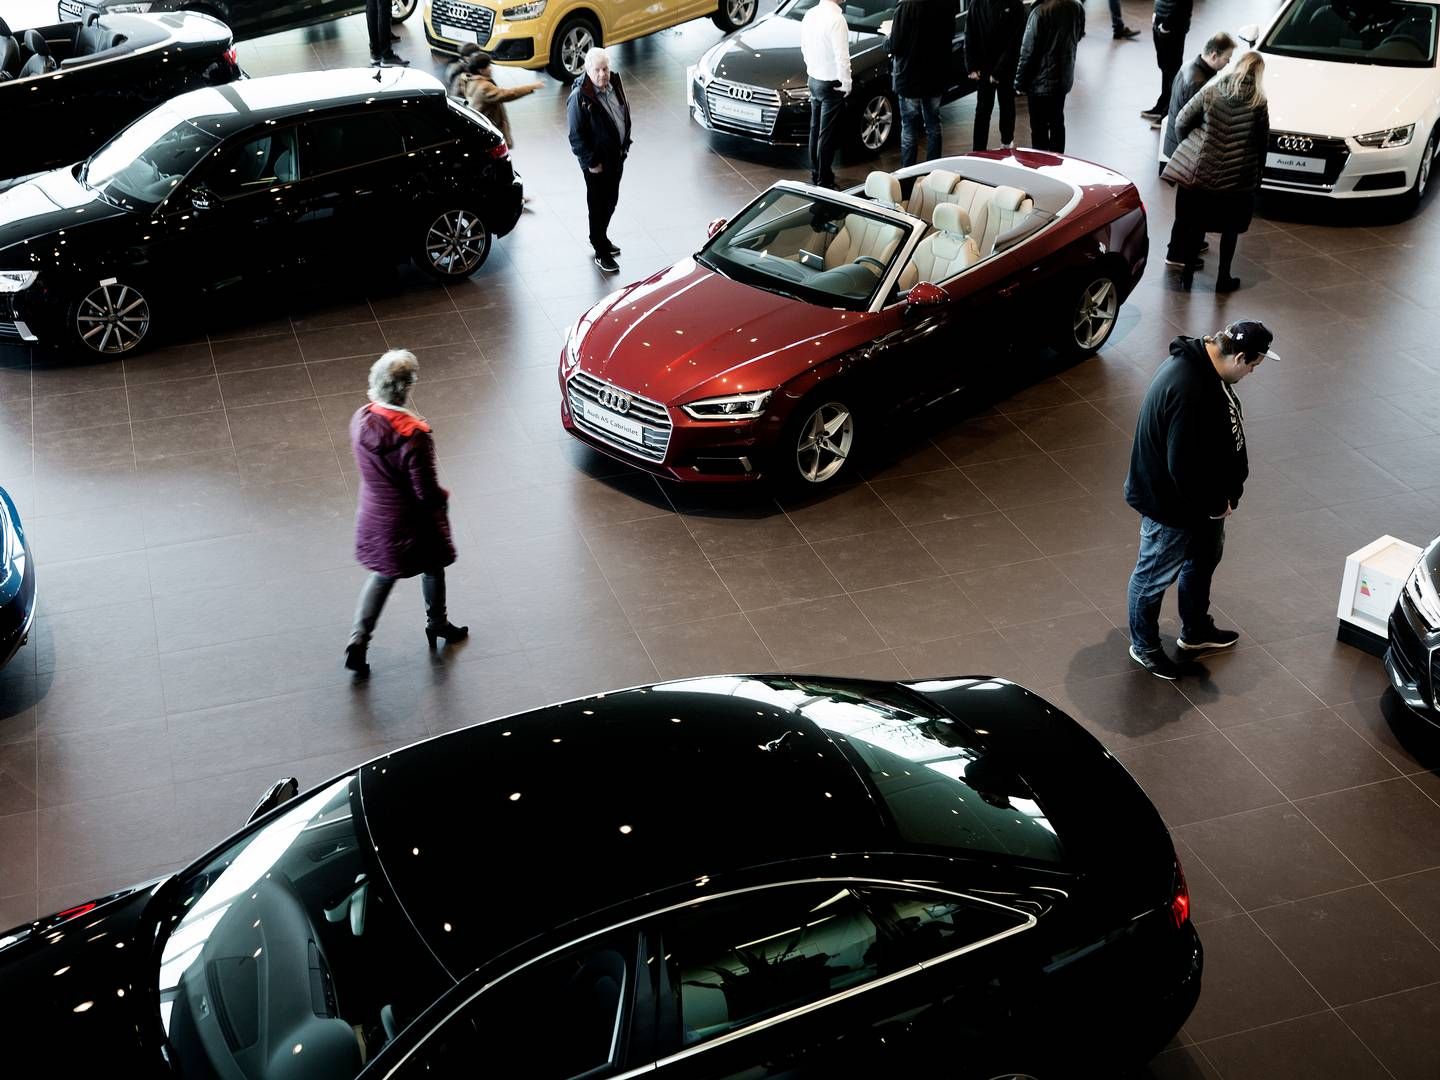 Bilforhandlerne har ved årets begyndelse for mange biler på lager. | Foto: Peter Hove Olesen/Politiken/Ritzau Scanpix